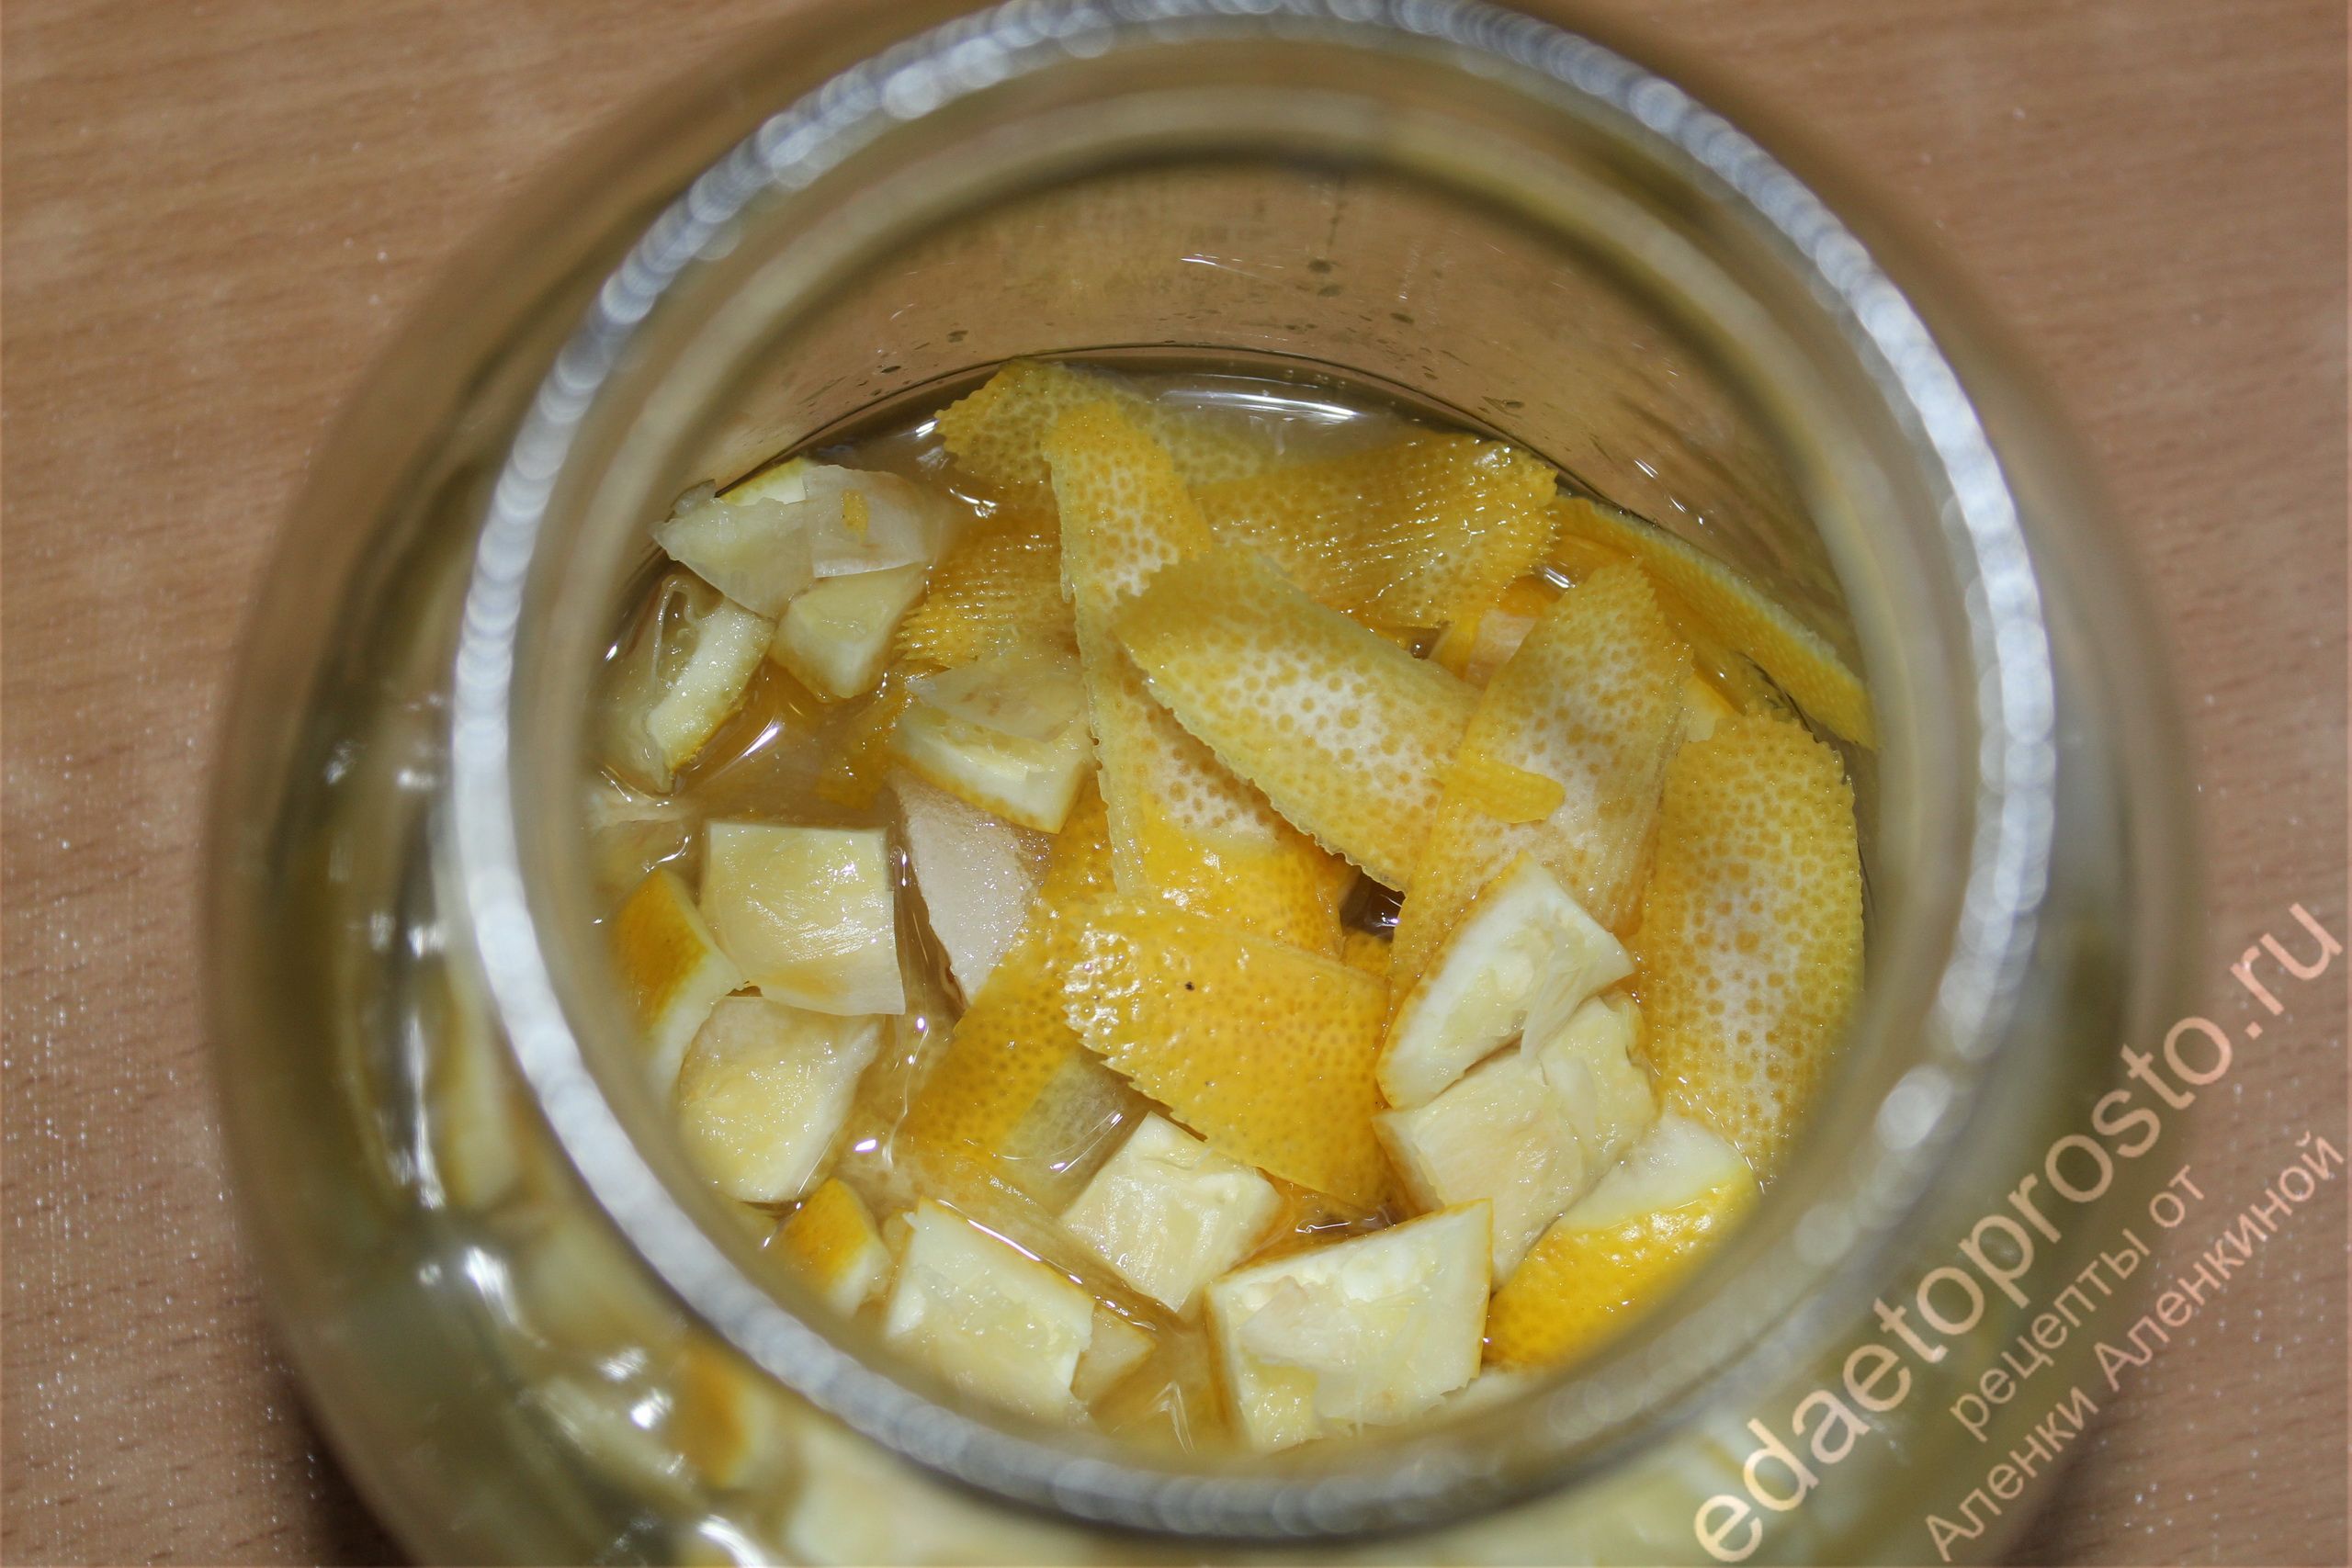 фото домашнего спиртного напитка лимонных корок с водкой